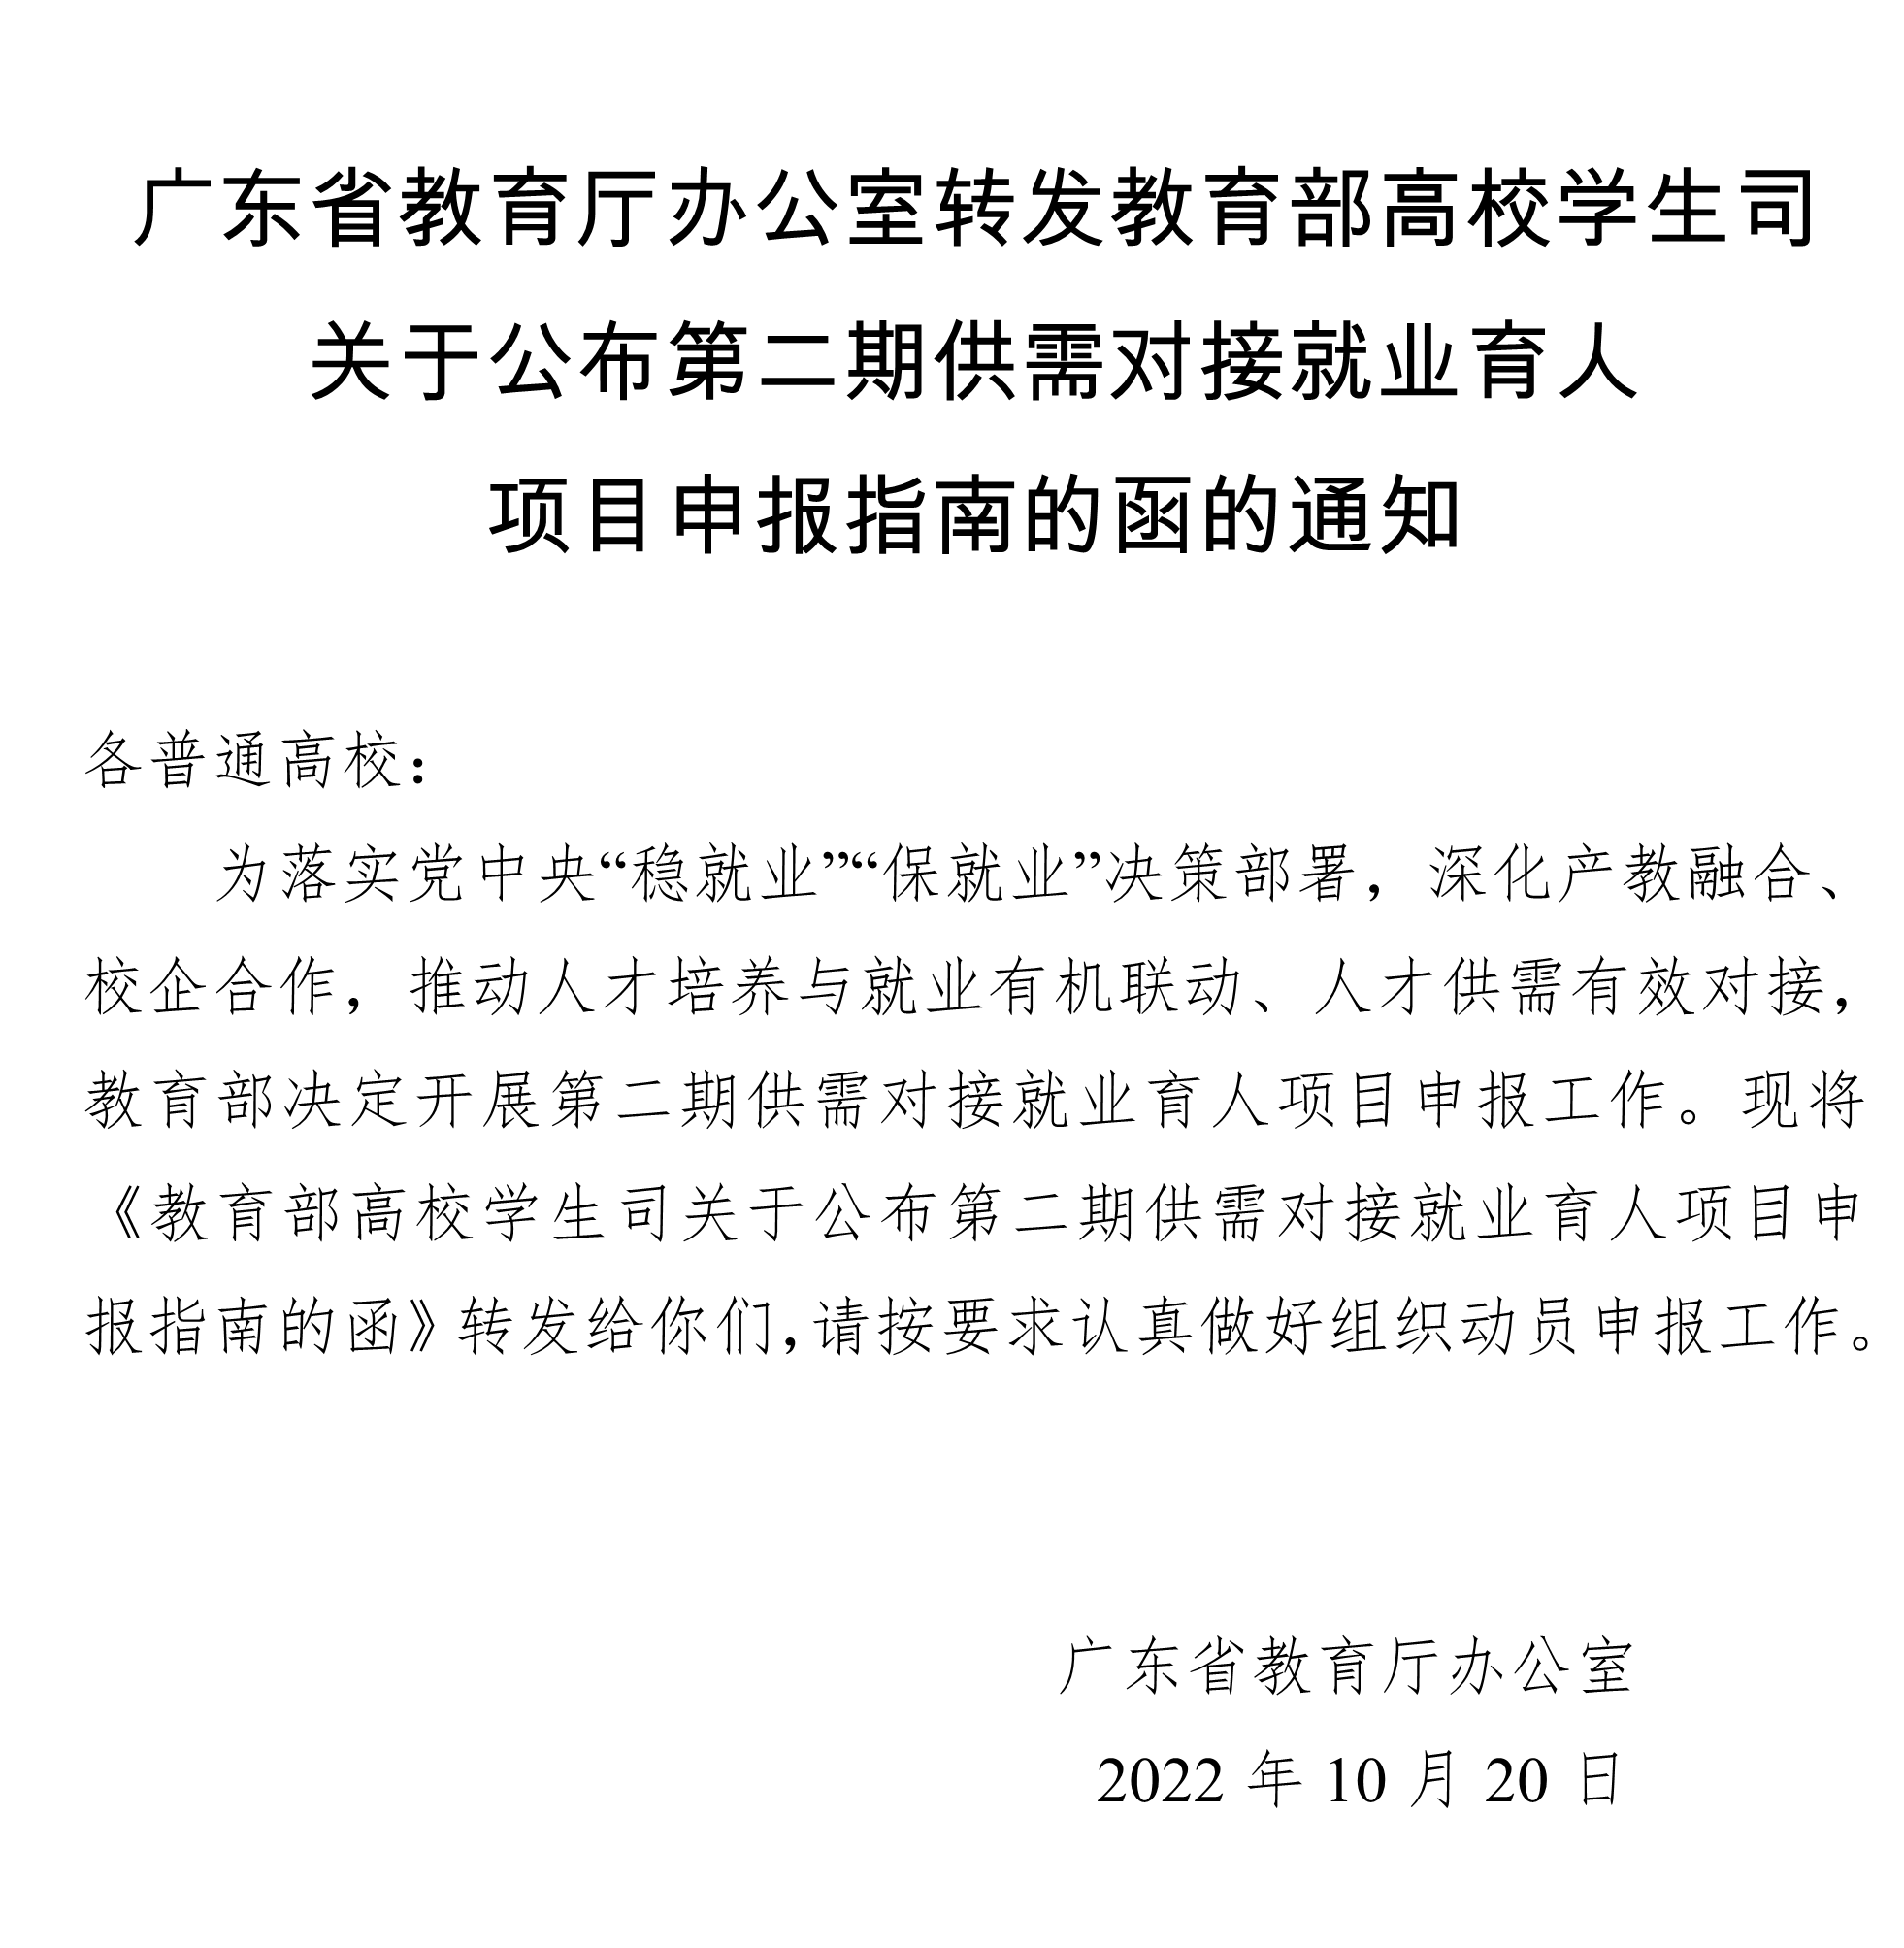 广东省教育厅办公室转发教育部高校学生司关于公布第二期供需对接就业育人项目申报指南的函的通知.png